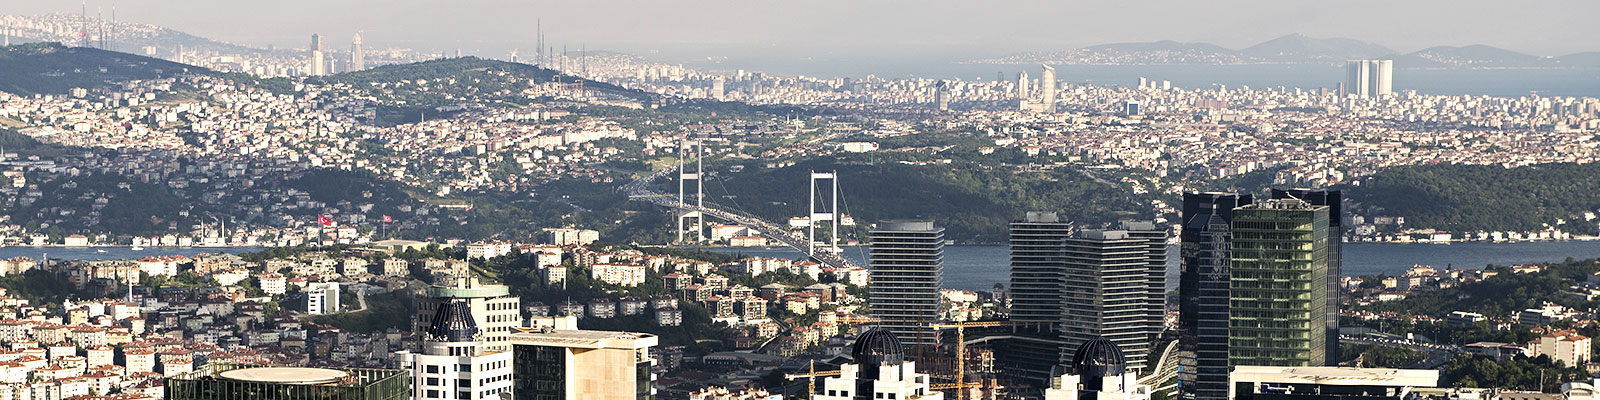 istanbul bosphorus picture